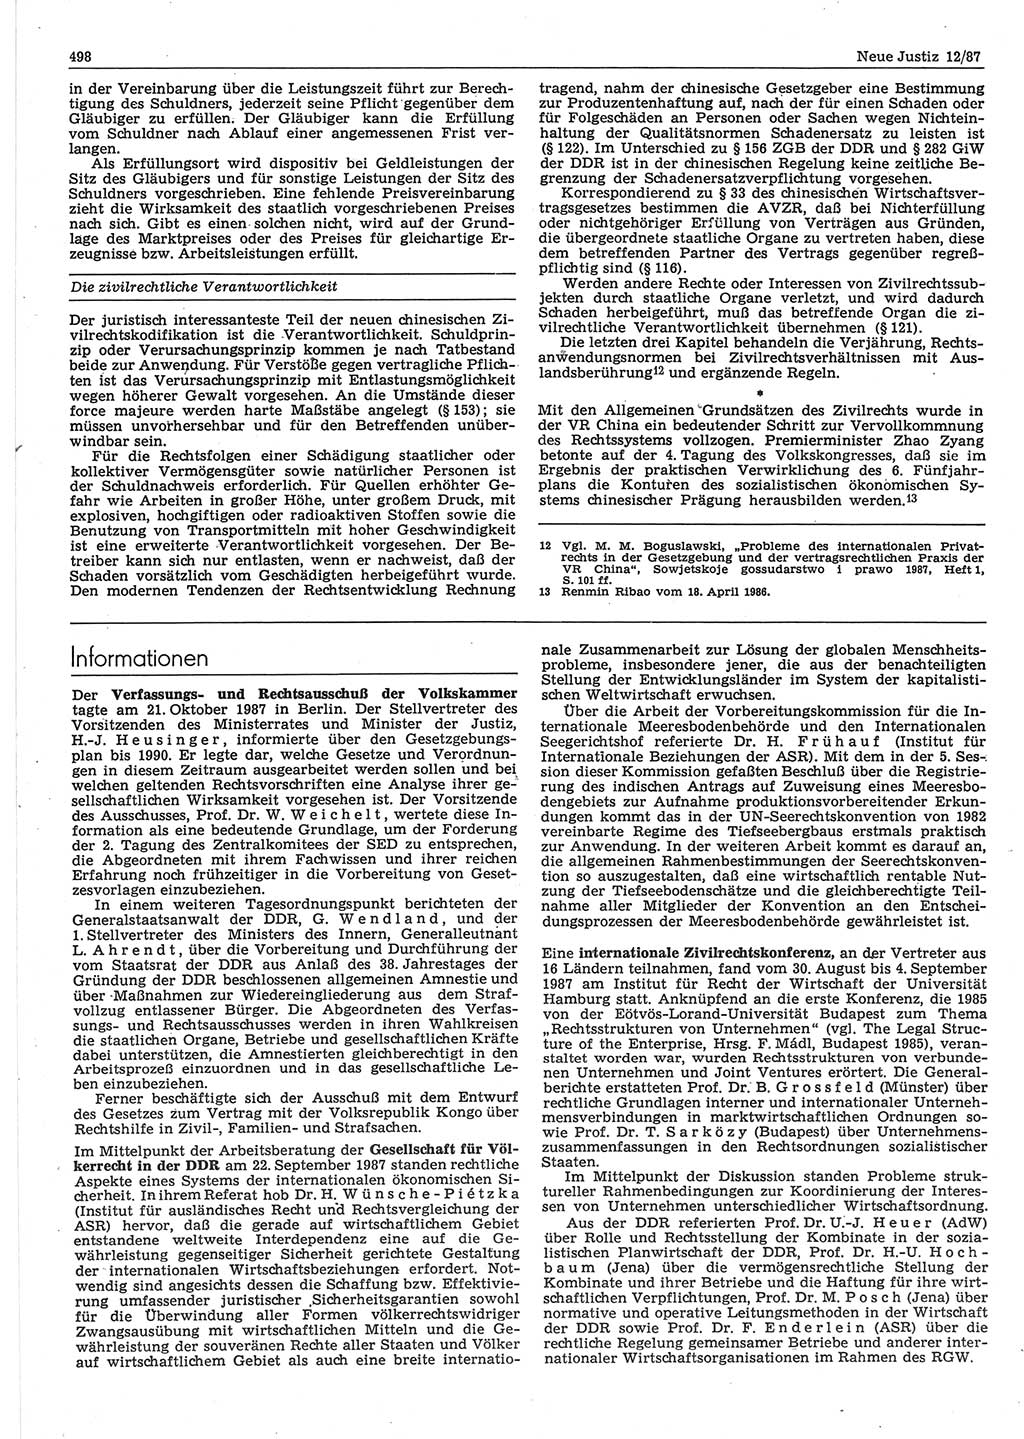 Neue Justiz (NJ), Zeitschrift für sozialistisches Recht und Gesetzlichkeit [Deutsche Demokratische Republik (DDR)], 41. Jahrgang 1987, Seite 498 (NJ DDR 1987, S. 498)